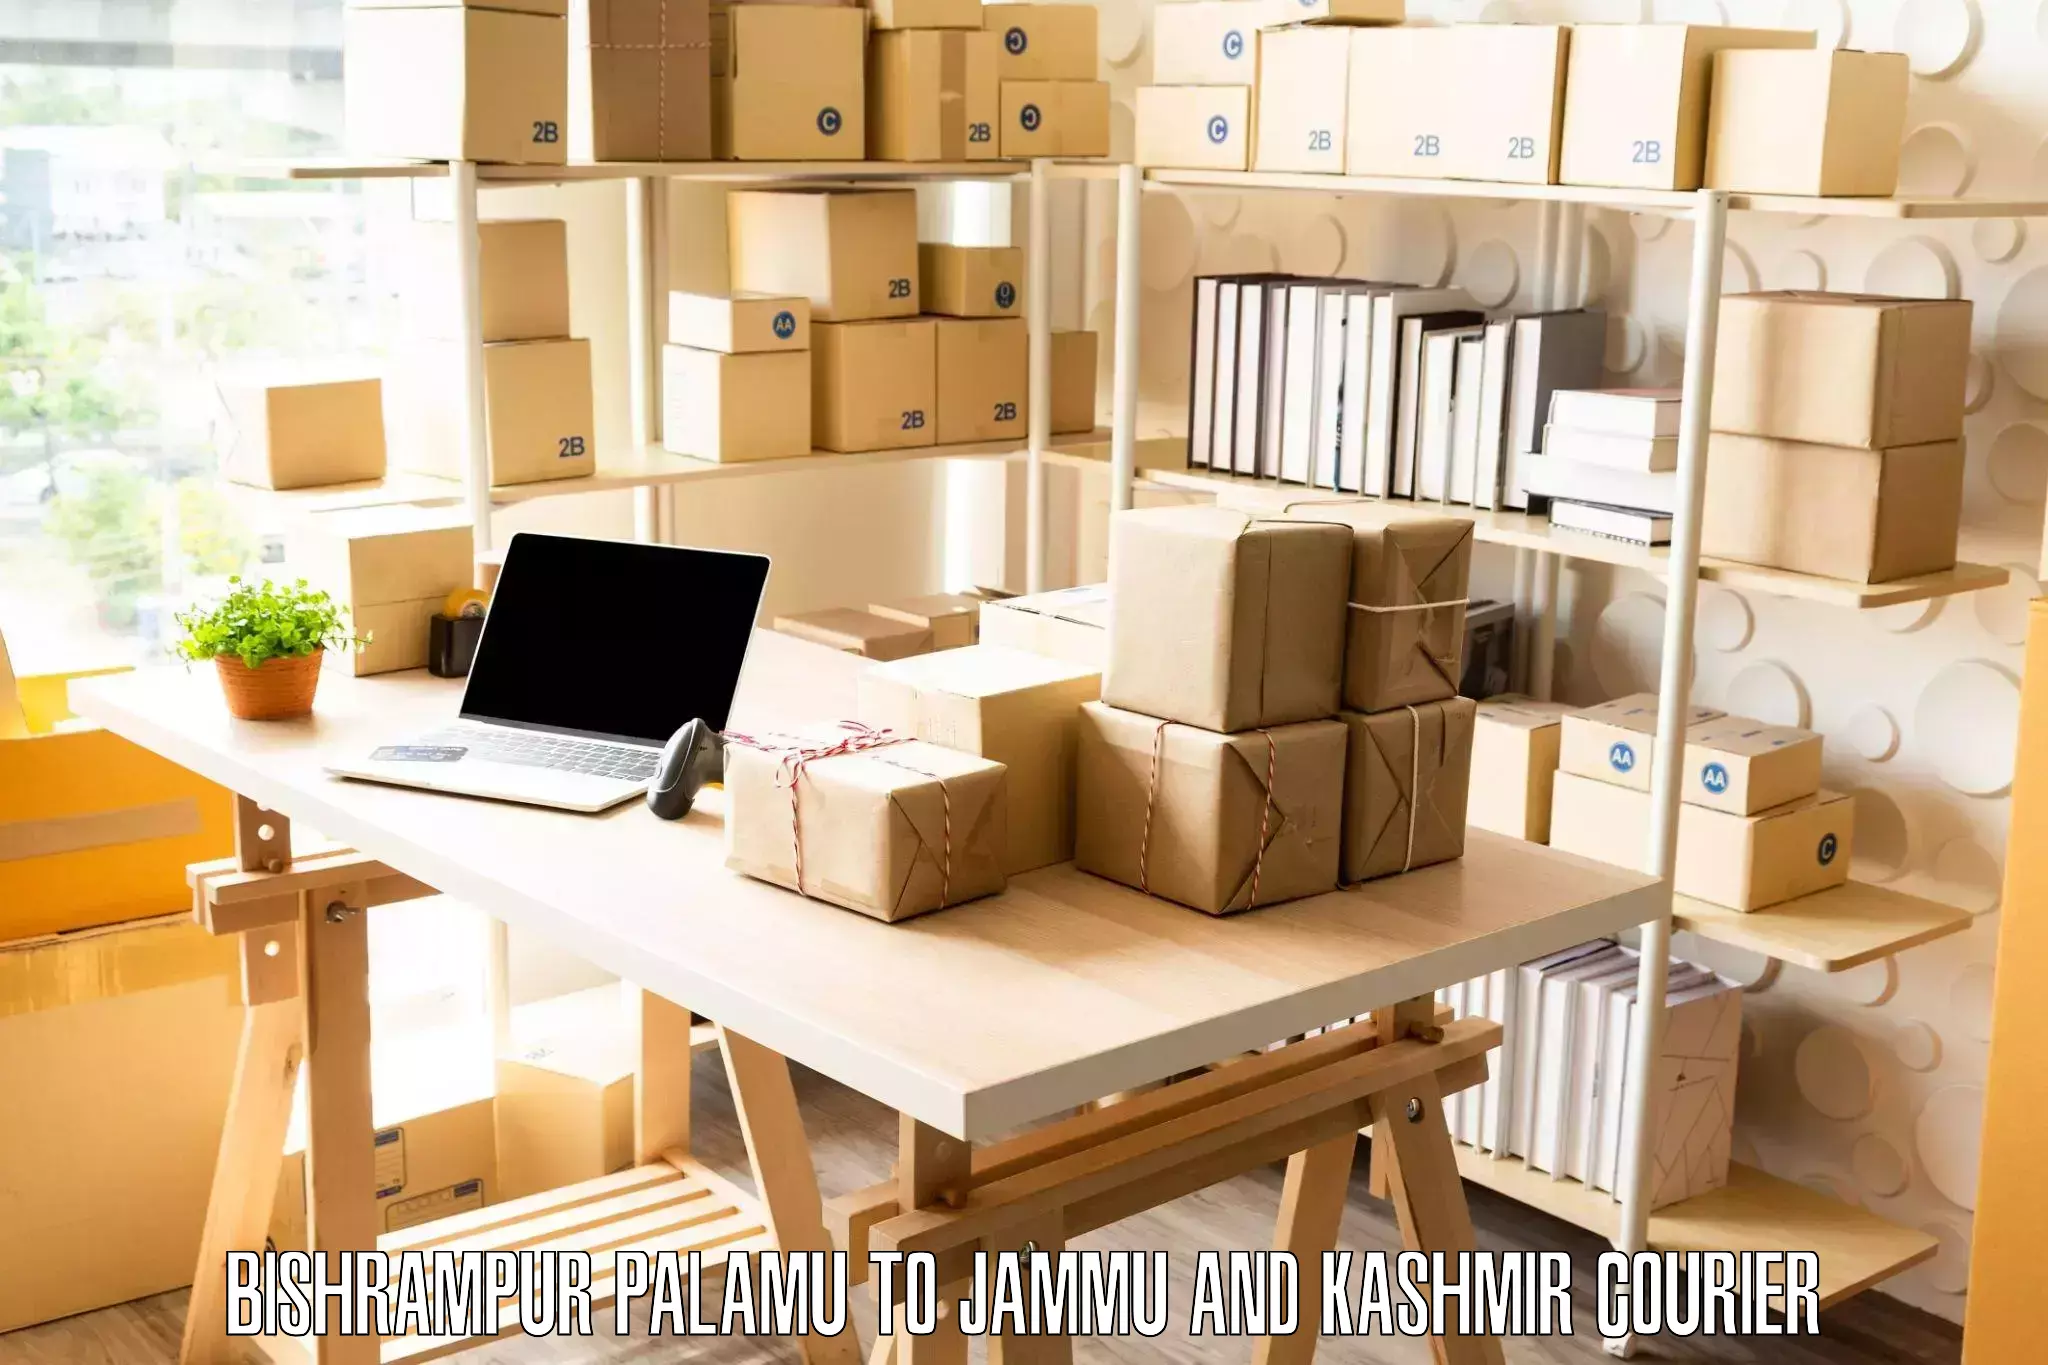 Quality moving and storage Bishrampur Palamu to Ramban